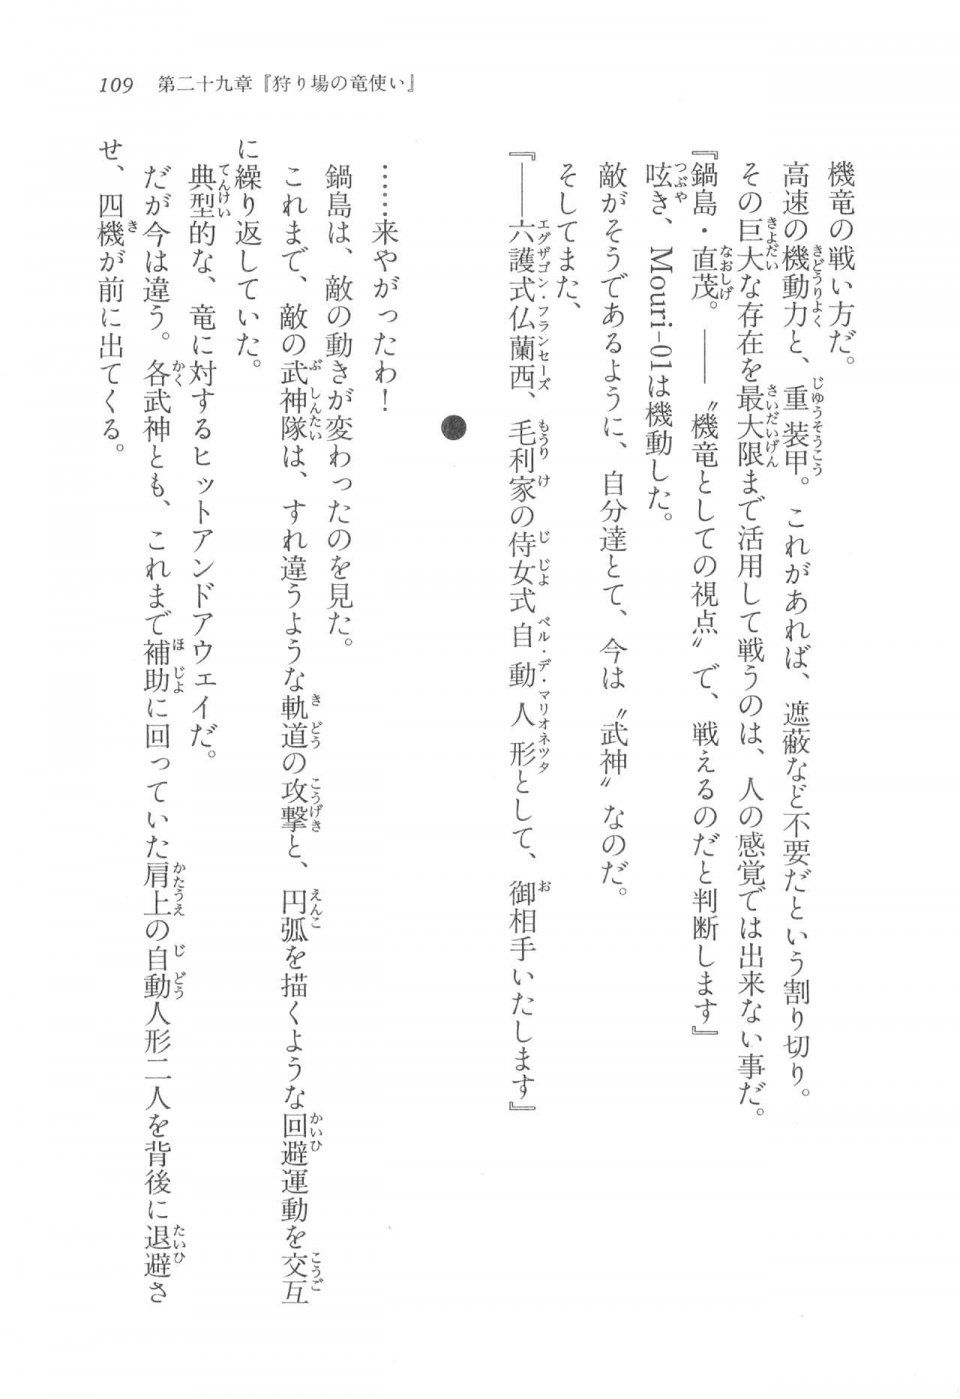 Kyoukai Senjou no Horizon LN Vol 17(7B) - Photo #109